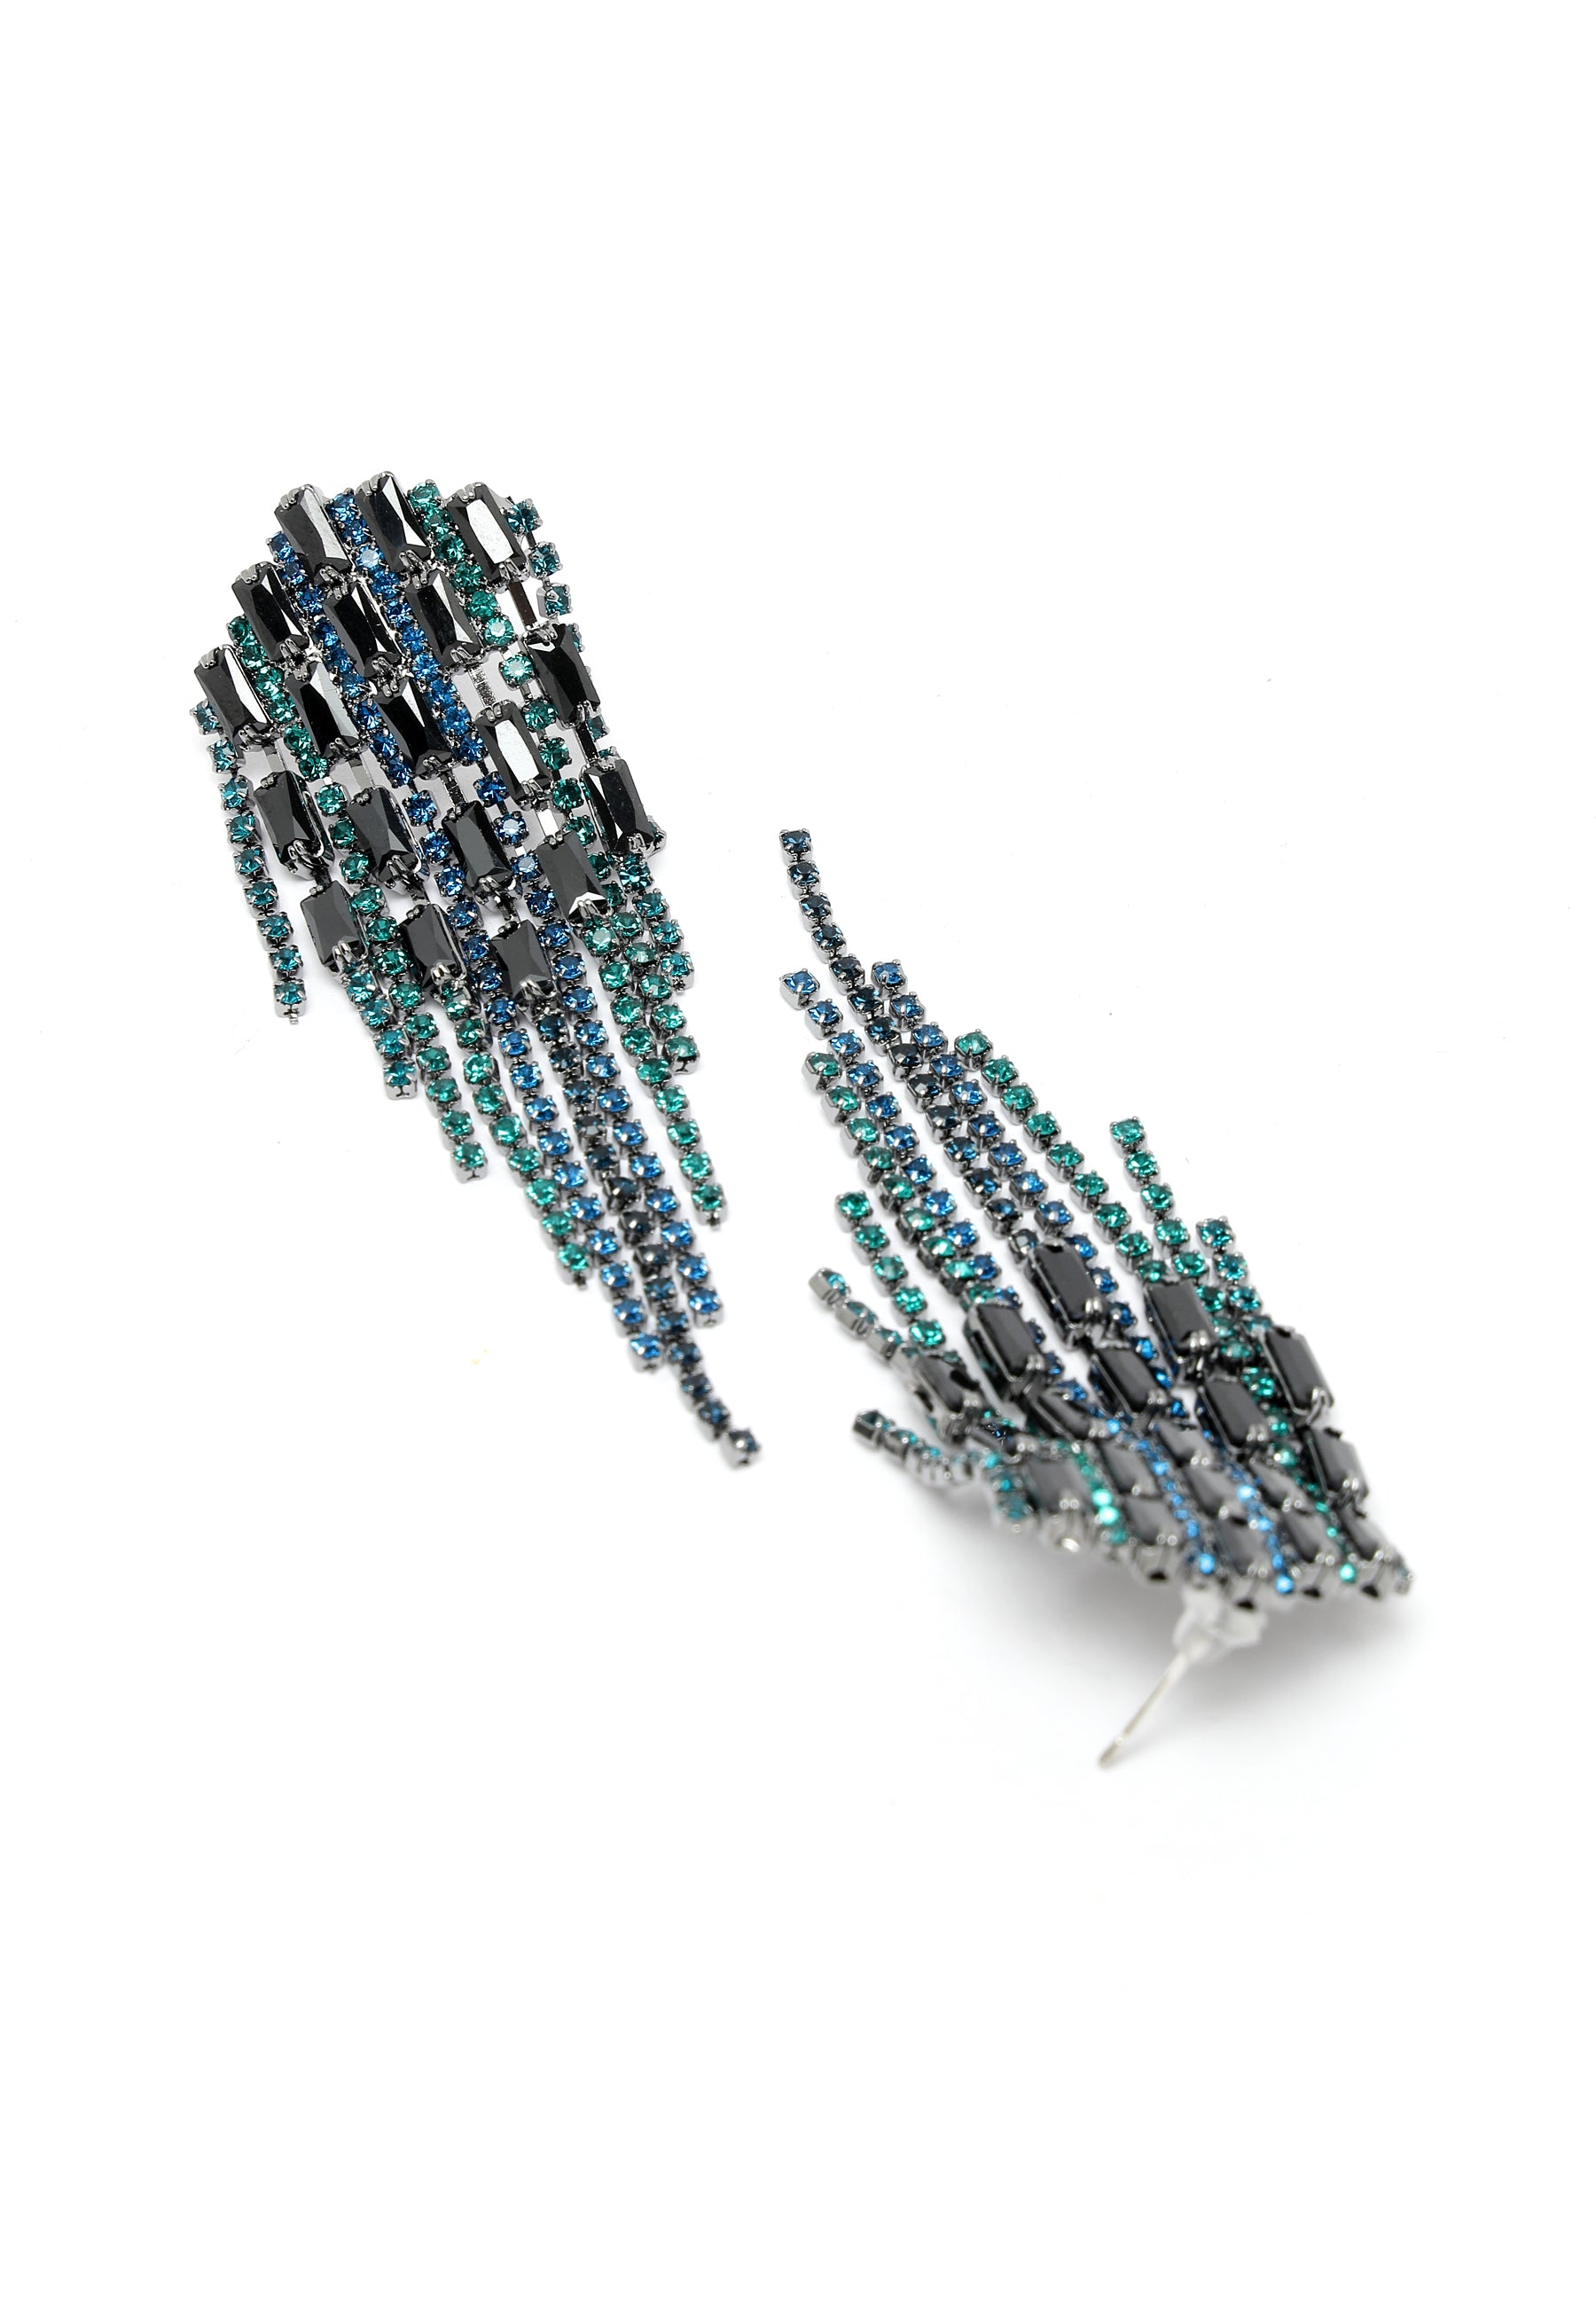 Kristallen bezaaide oorbellen in blauw